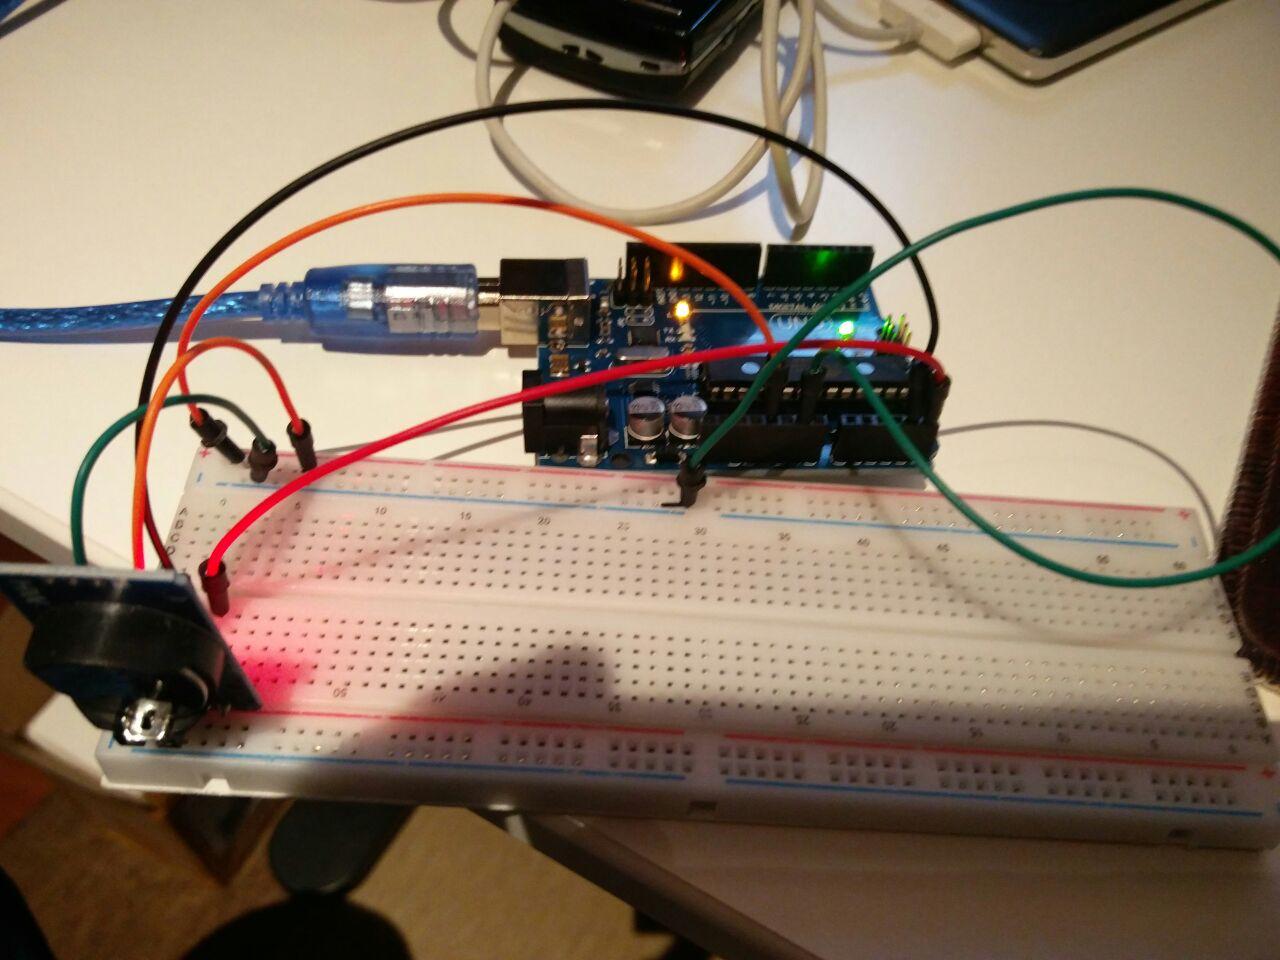 Arduino + piladun erlojua protoboard batetan montatuta